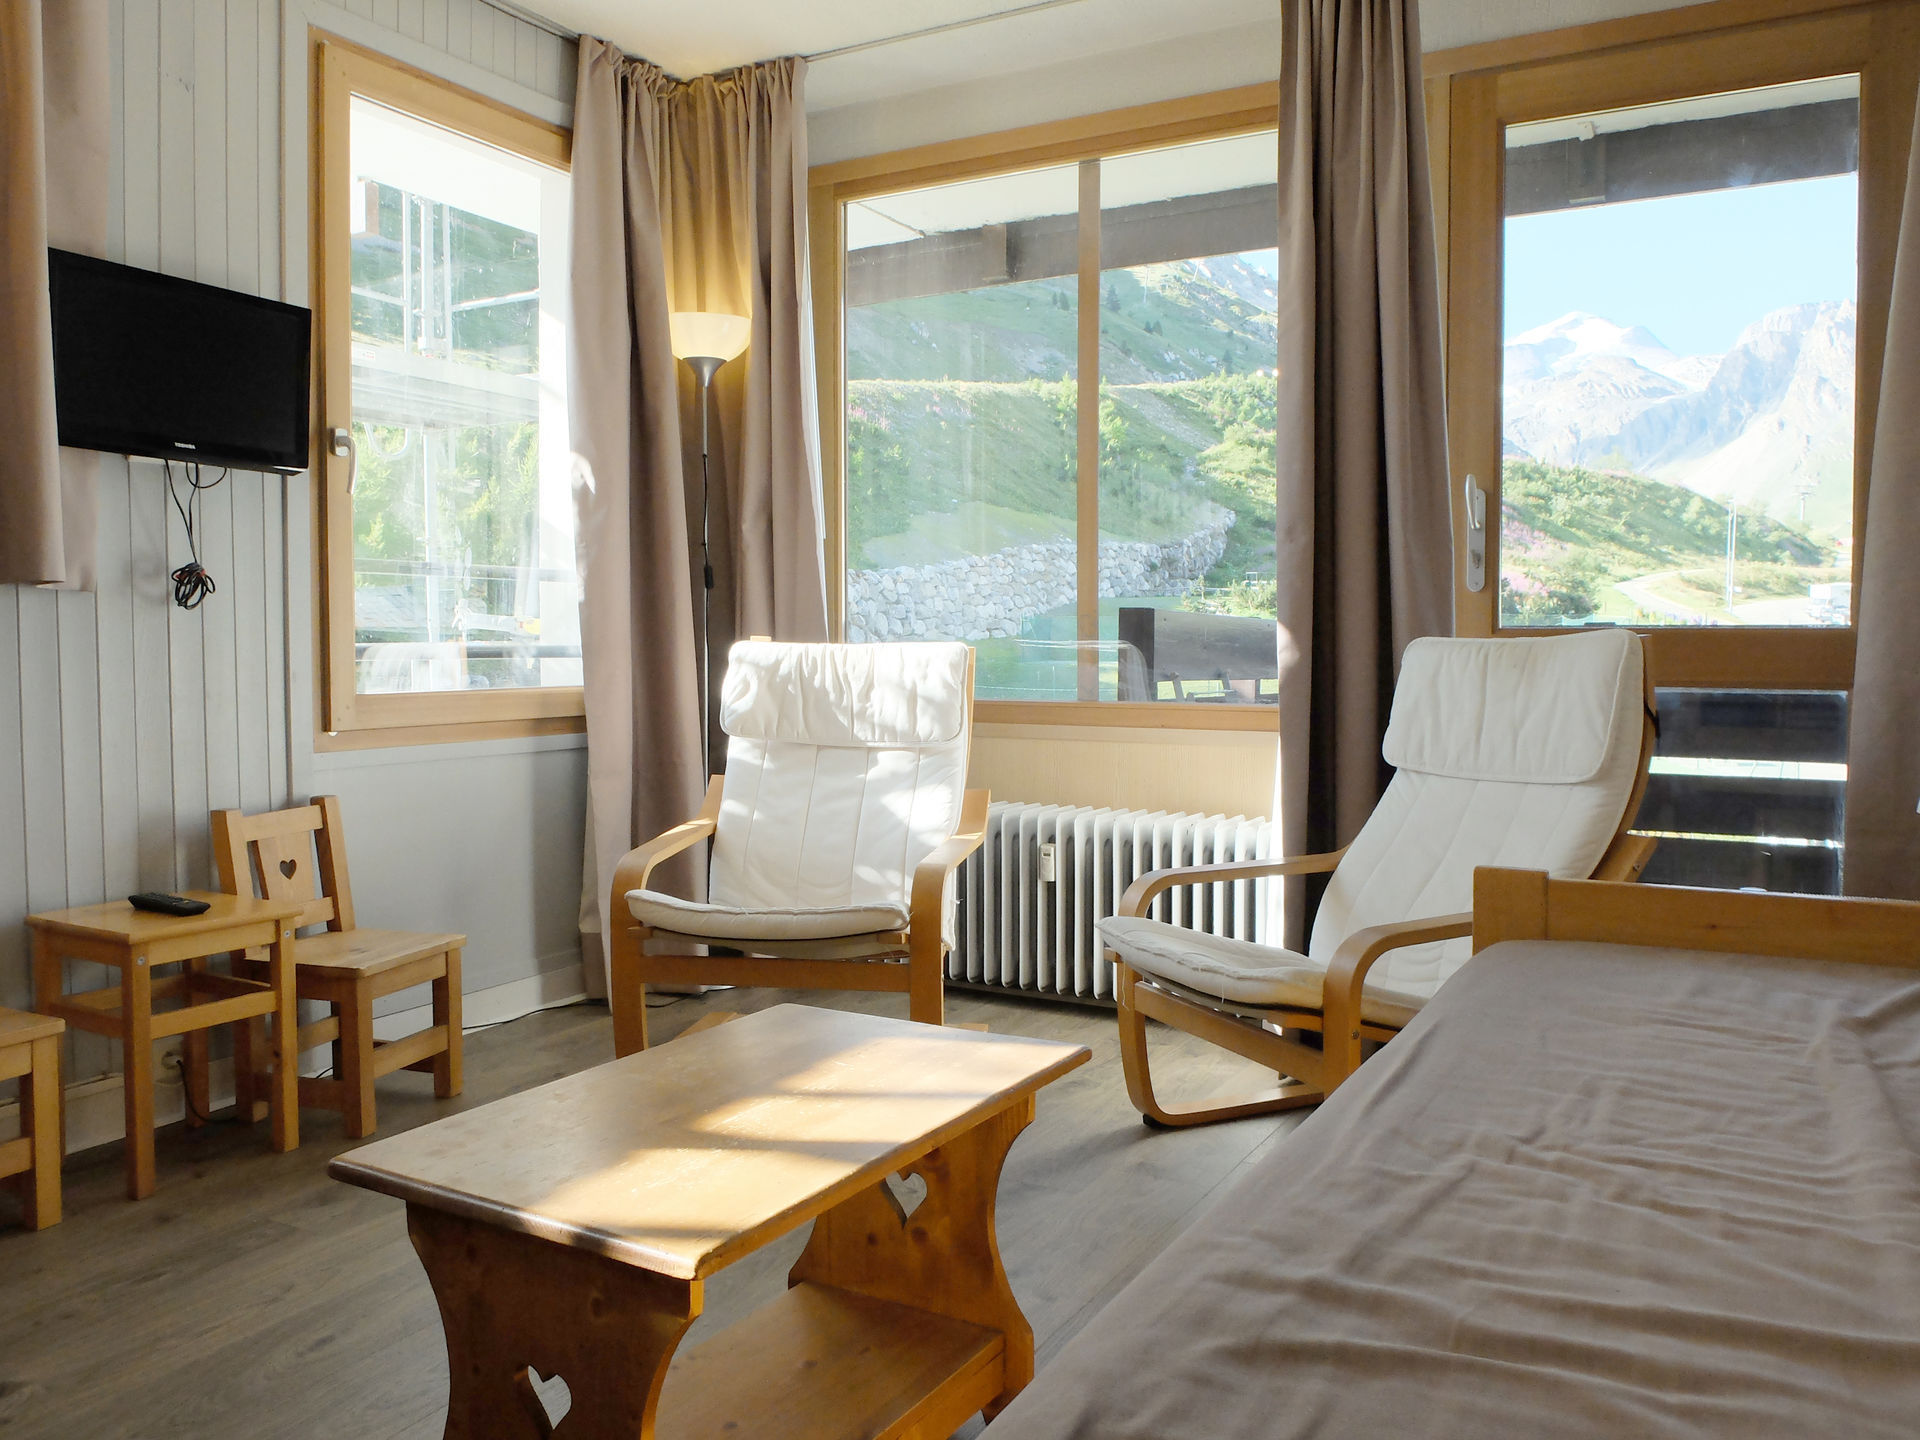 3 rooms 7 people - travelski home choice - Apartements TOUR DU LAC - Tignes 2100 Le Lavachet